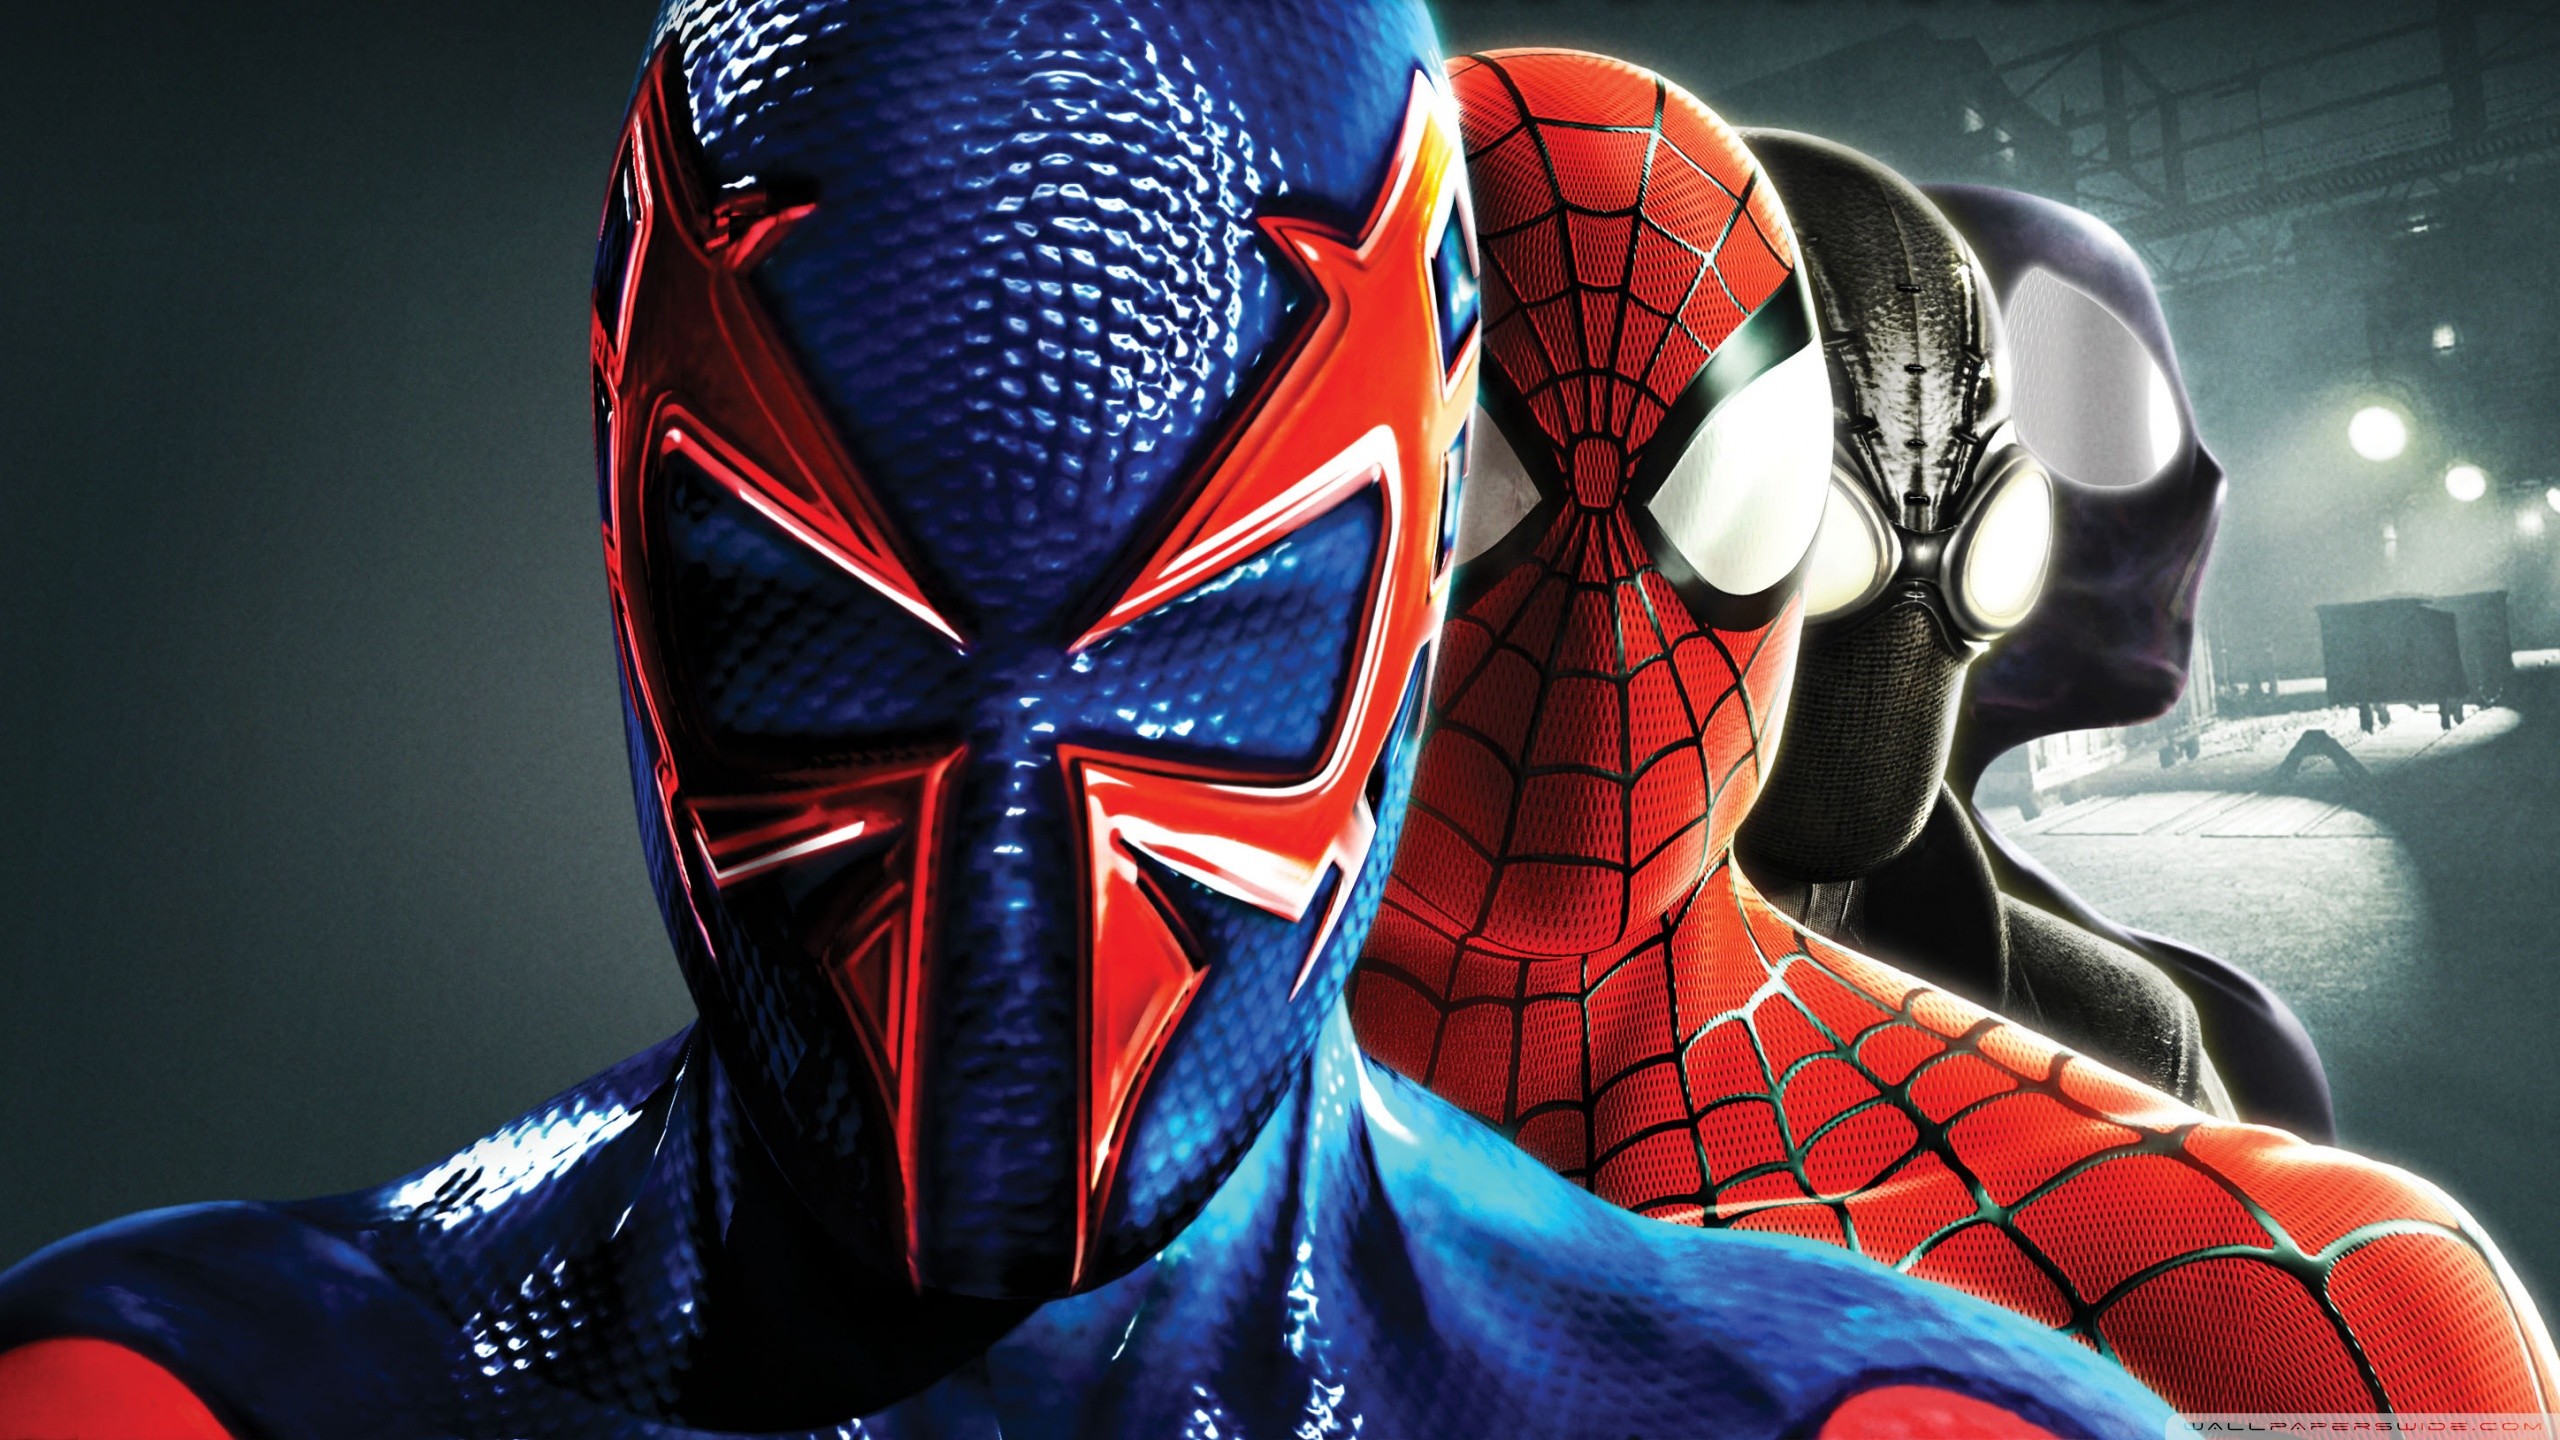 Hình Spider Man 4K - Với hình ảnh Spider Man chất lượng 4K, bạn sẽ có được trải nghiệm tuyệt vời và đầy sống động khi xem hình ảnh nhân vật Người Nhện mình yêu thích. Nhiều chi tiết sắc nét và ngộ nghĩnh sẽ khiến bạn thích thú.